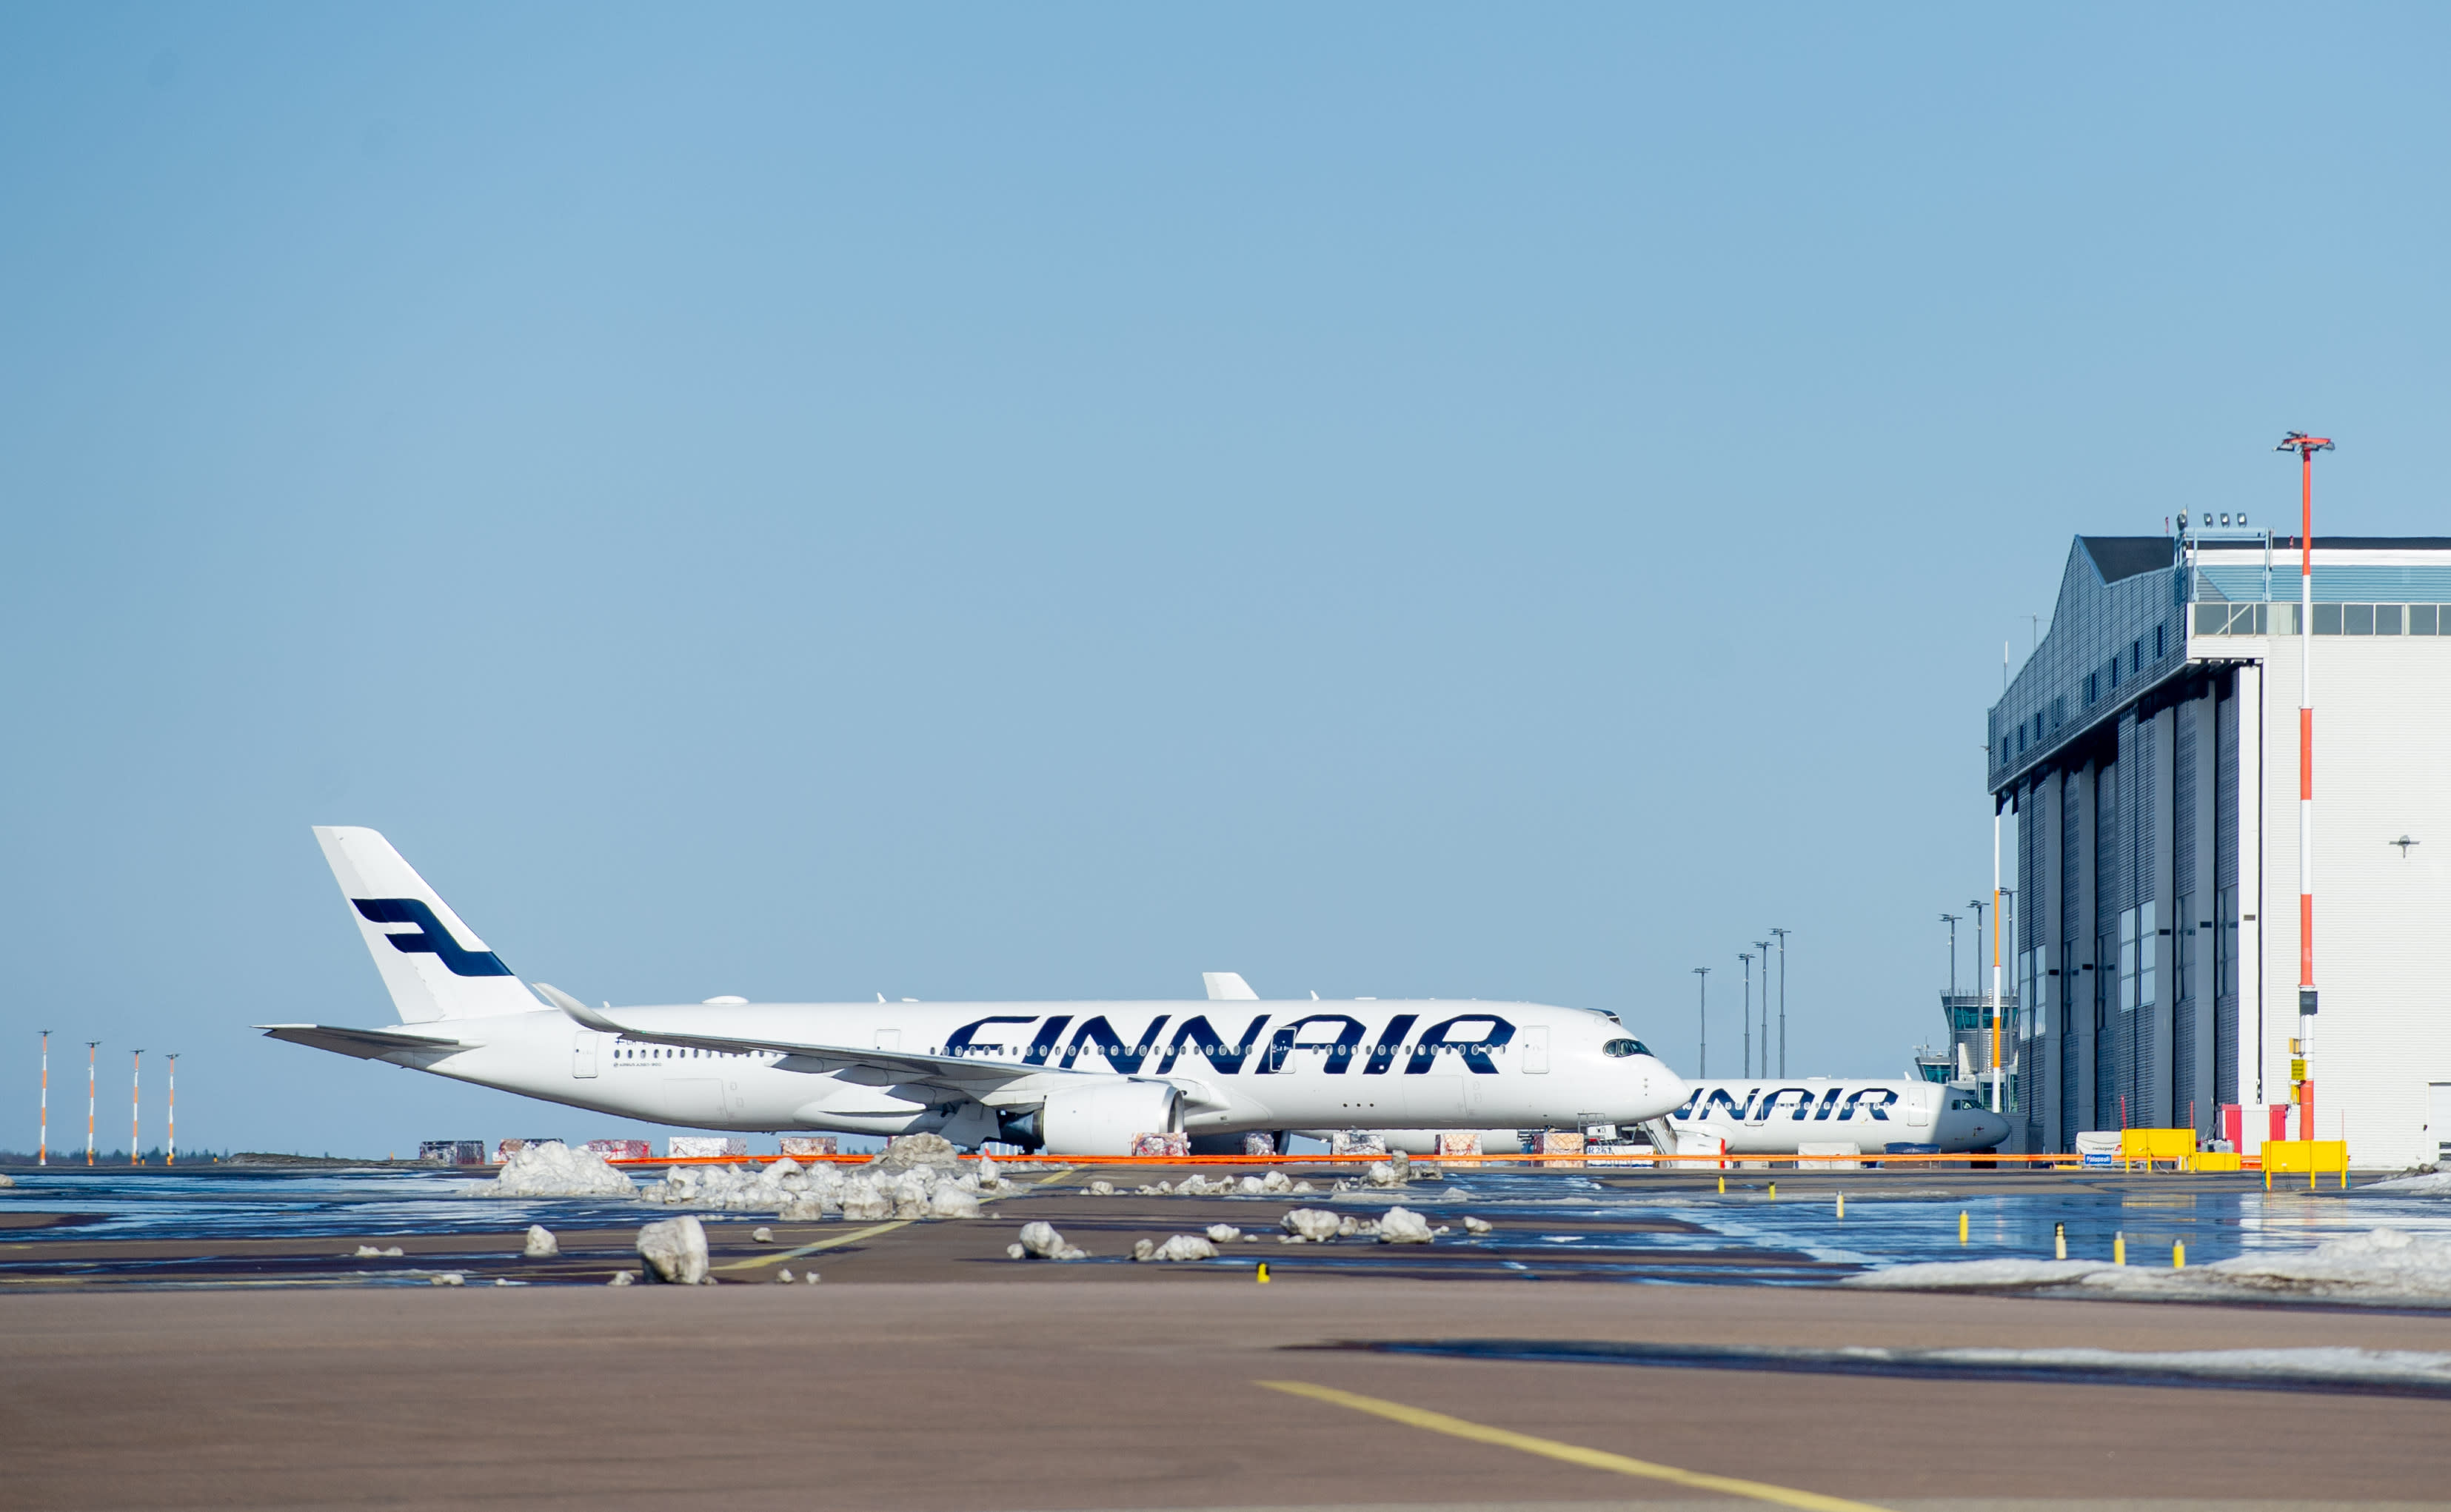 Finnair schränkt Passagiere unter Androhung rechtlicher Schritte auf London Heathrow ein